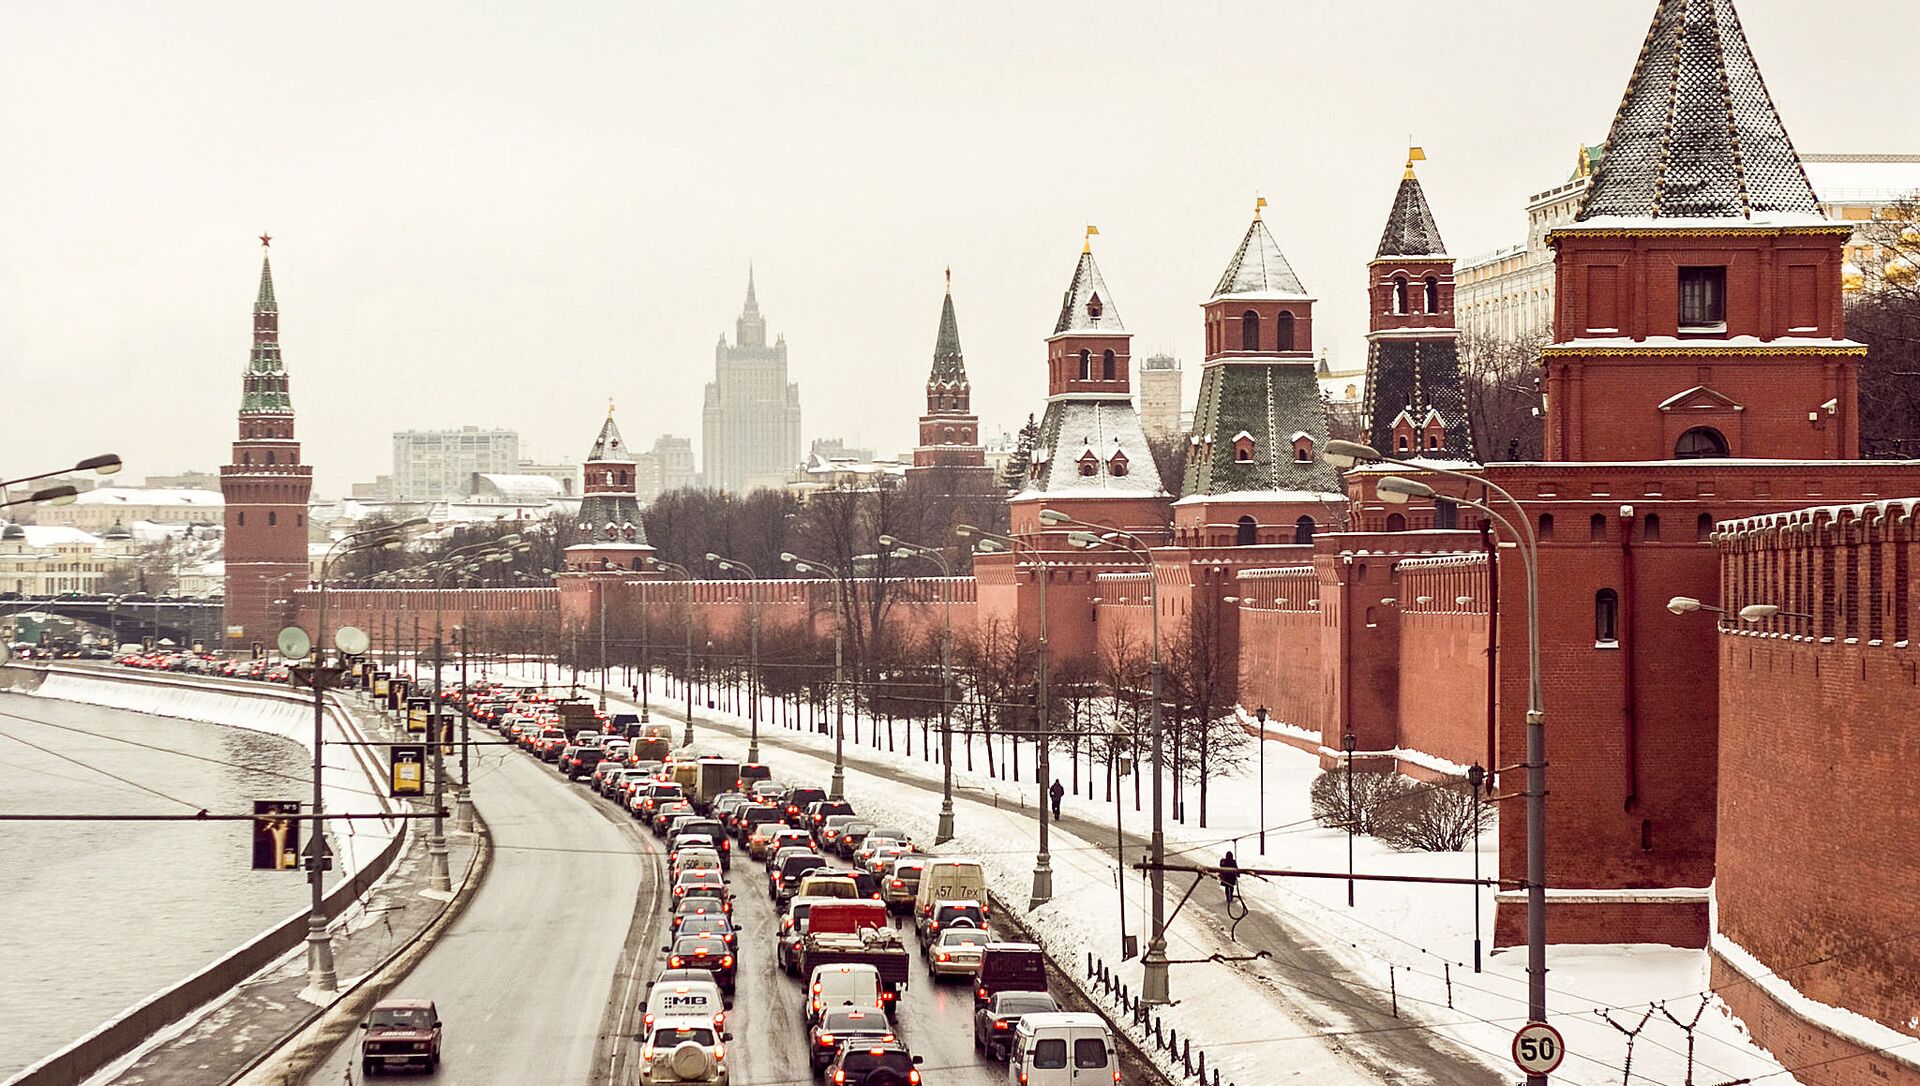 Вид на Кремлевскую набережную с Большого Москворецкого моста - Sputnik Lietuva, 1920, 11.02.2021